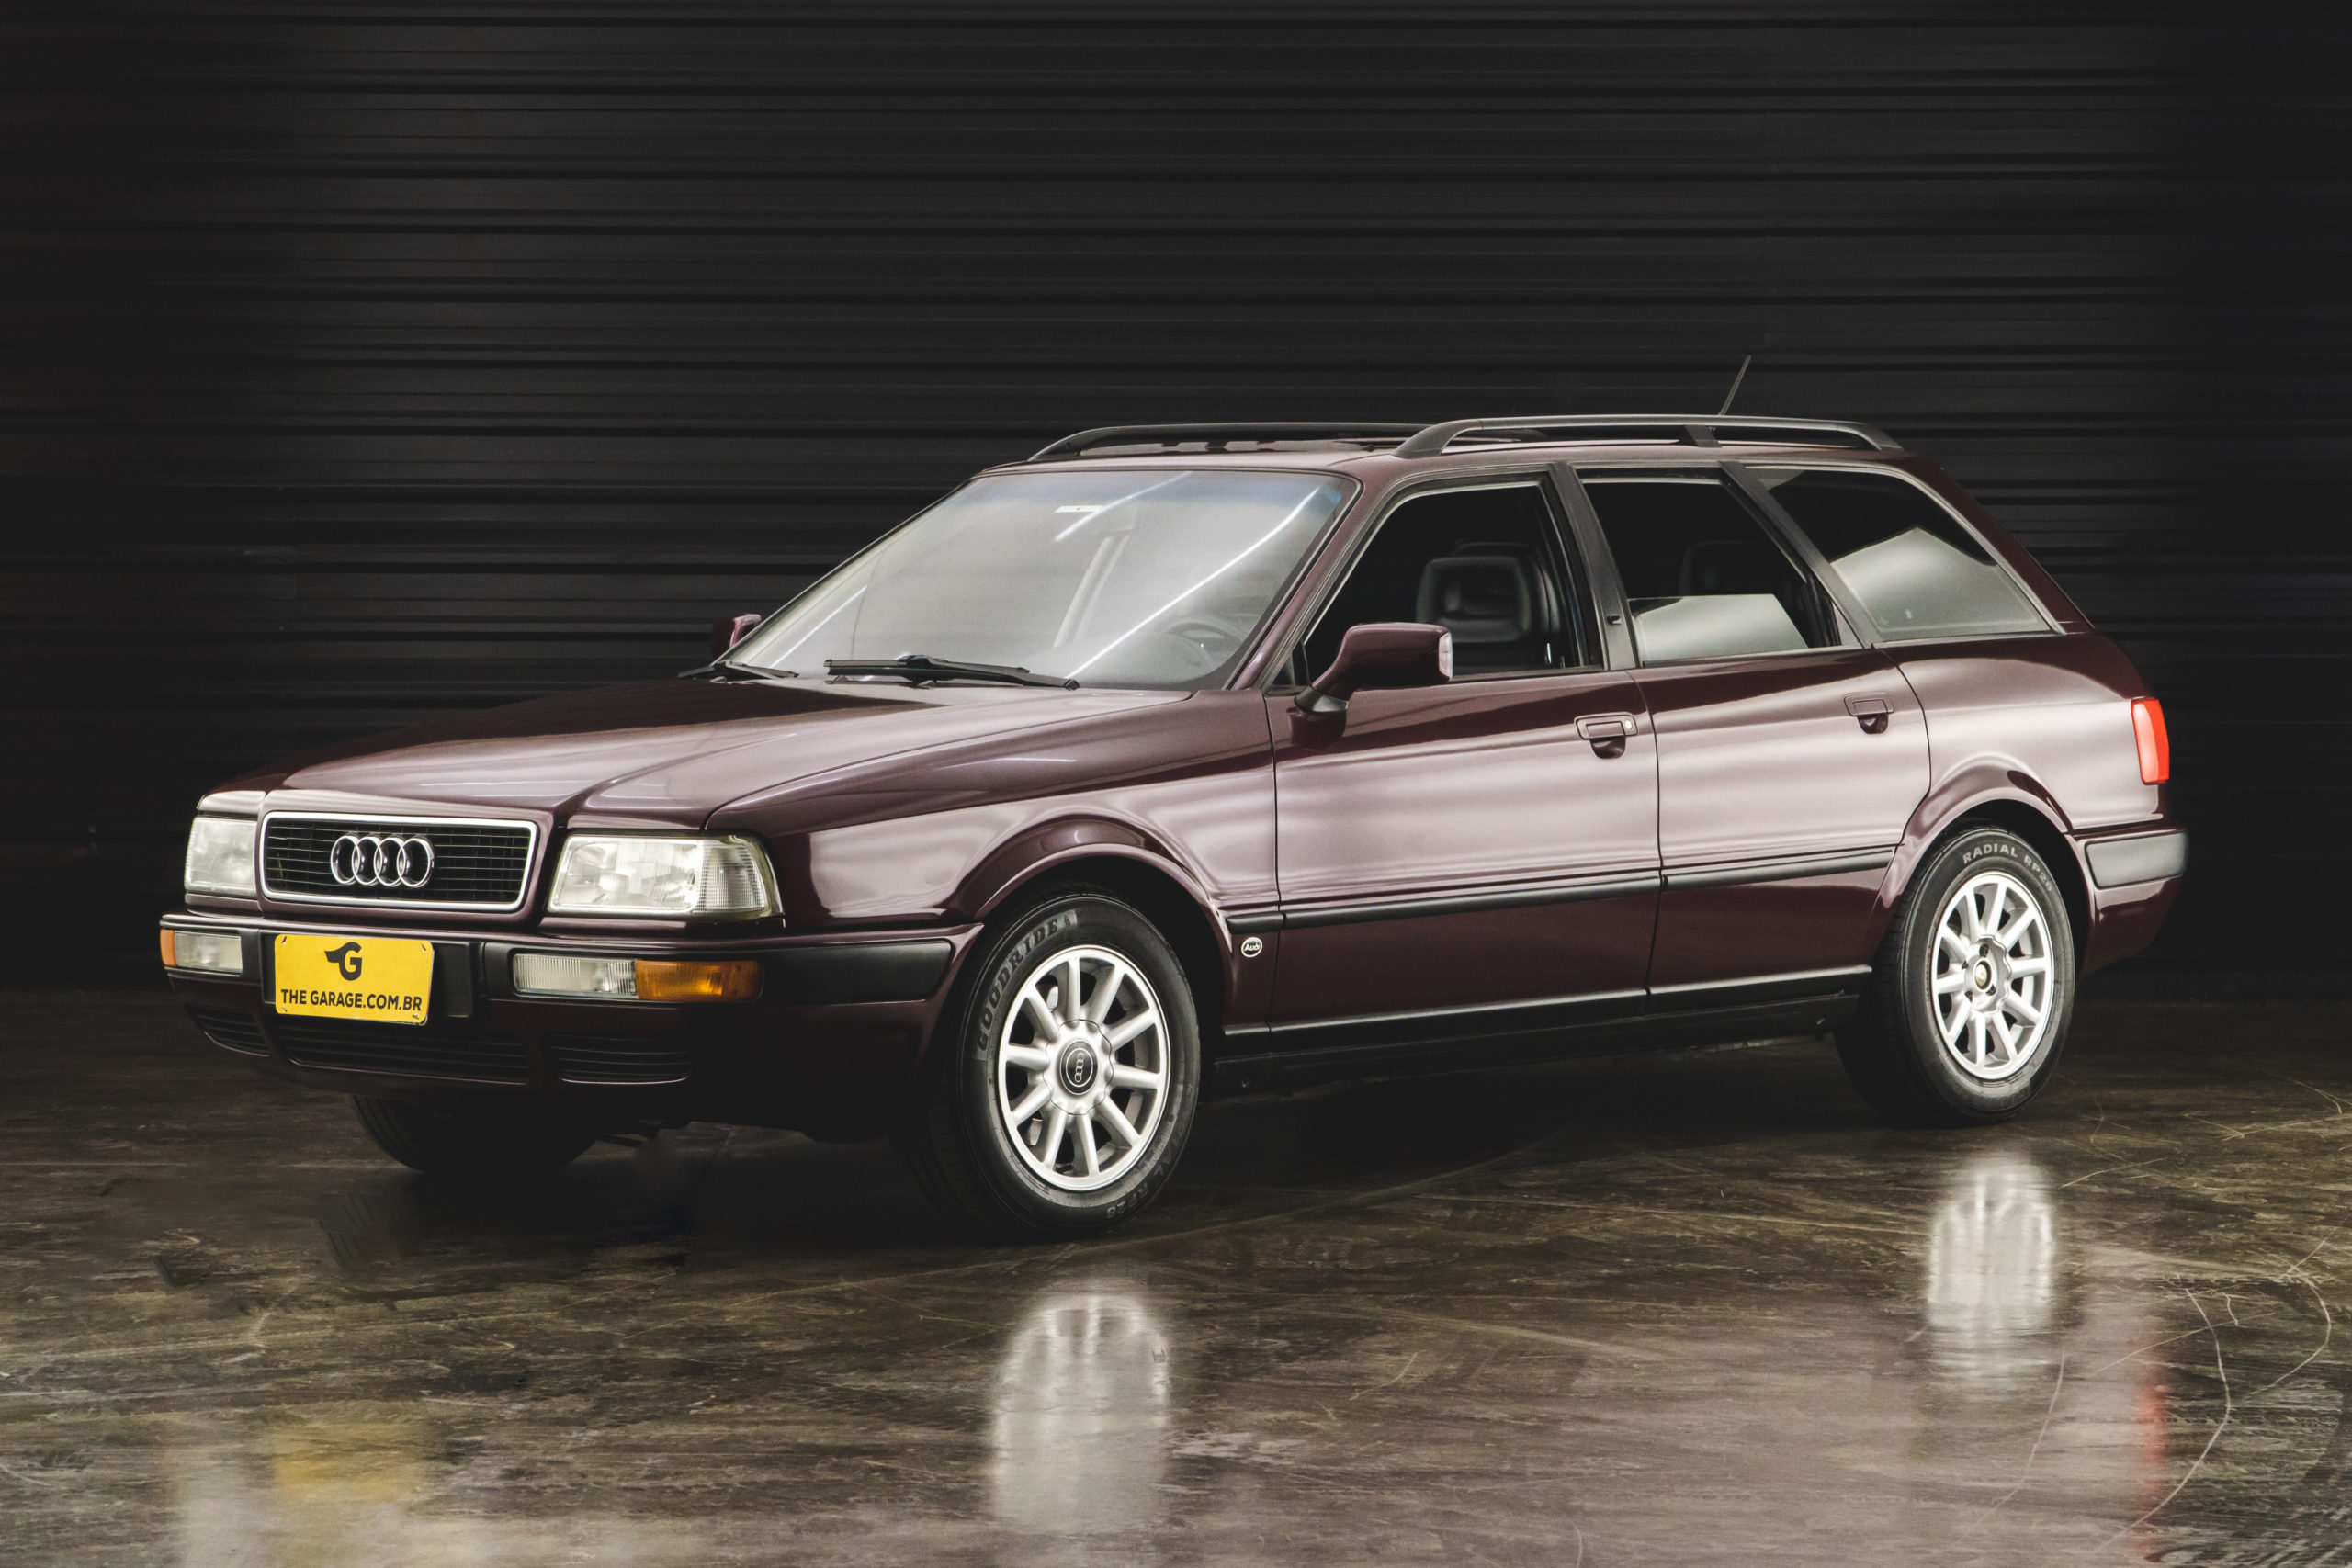 1995 Audi 80s 2.6e a venda the garage